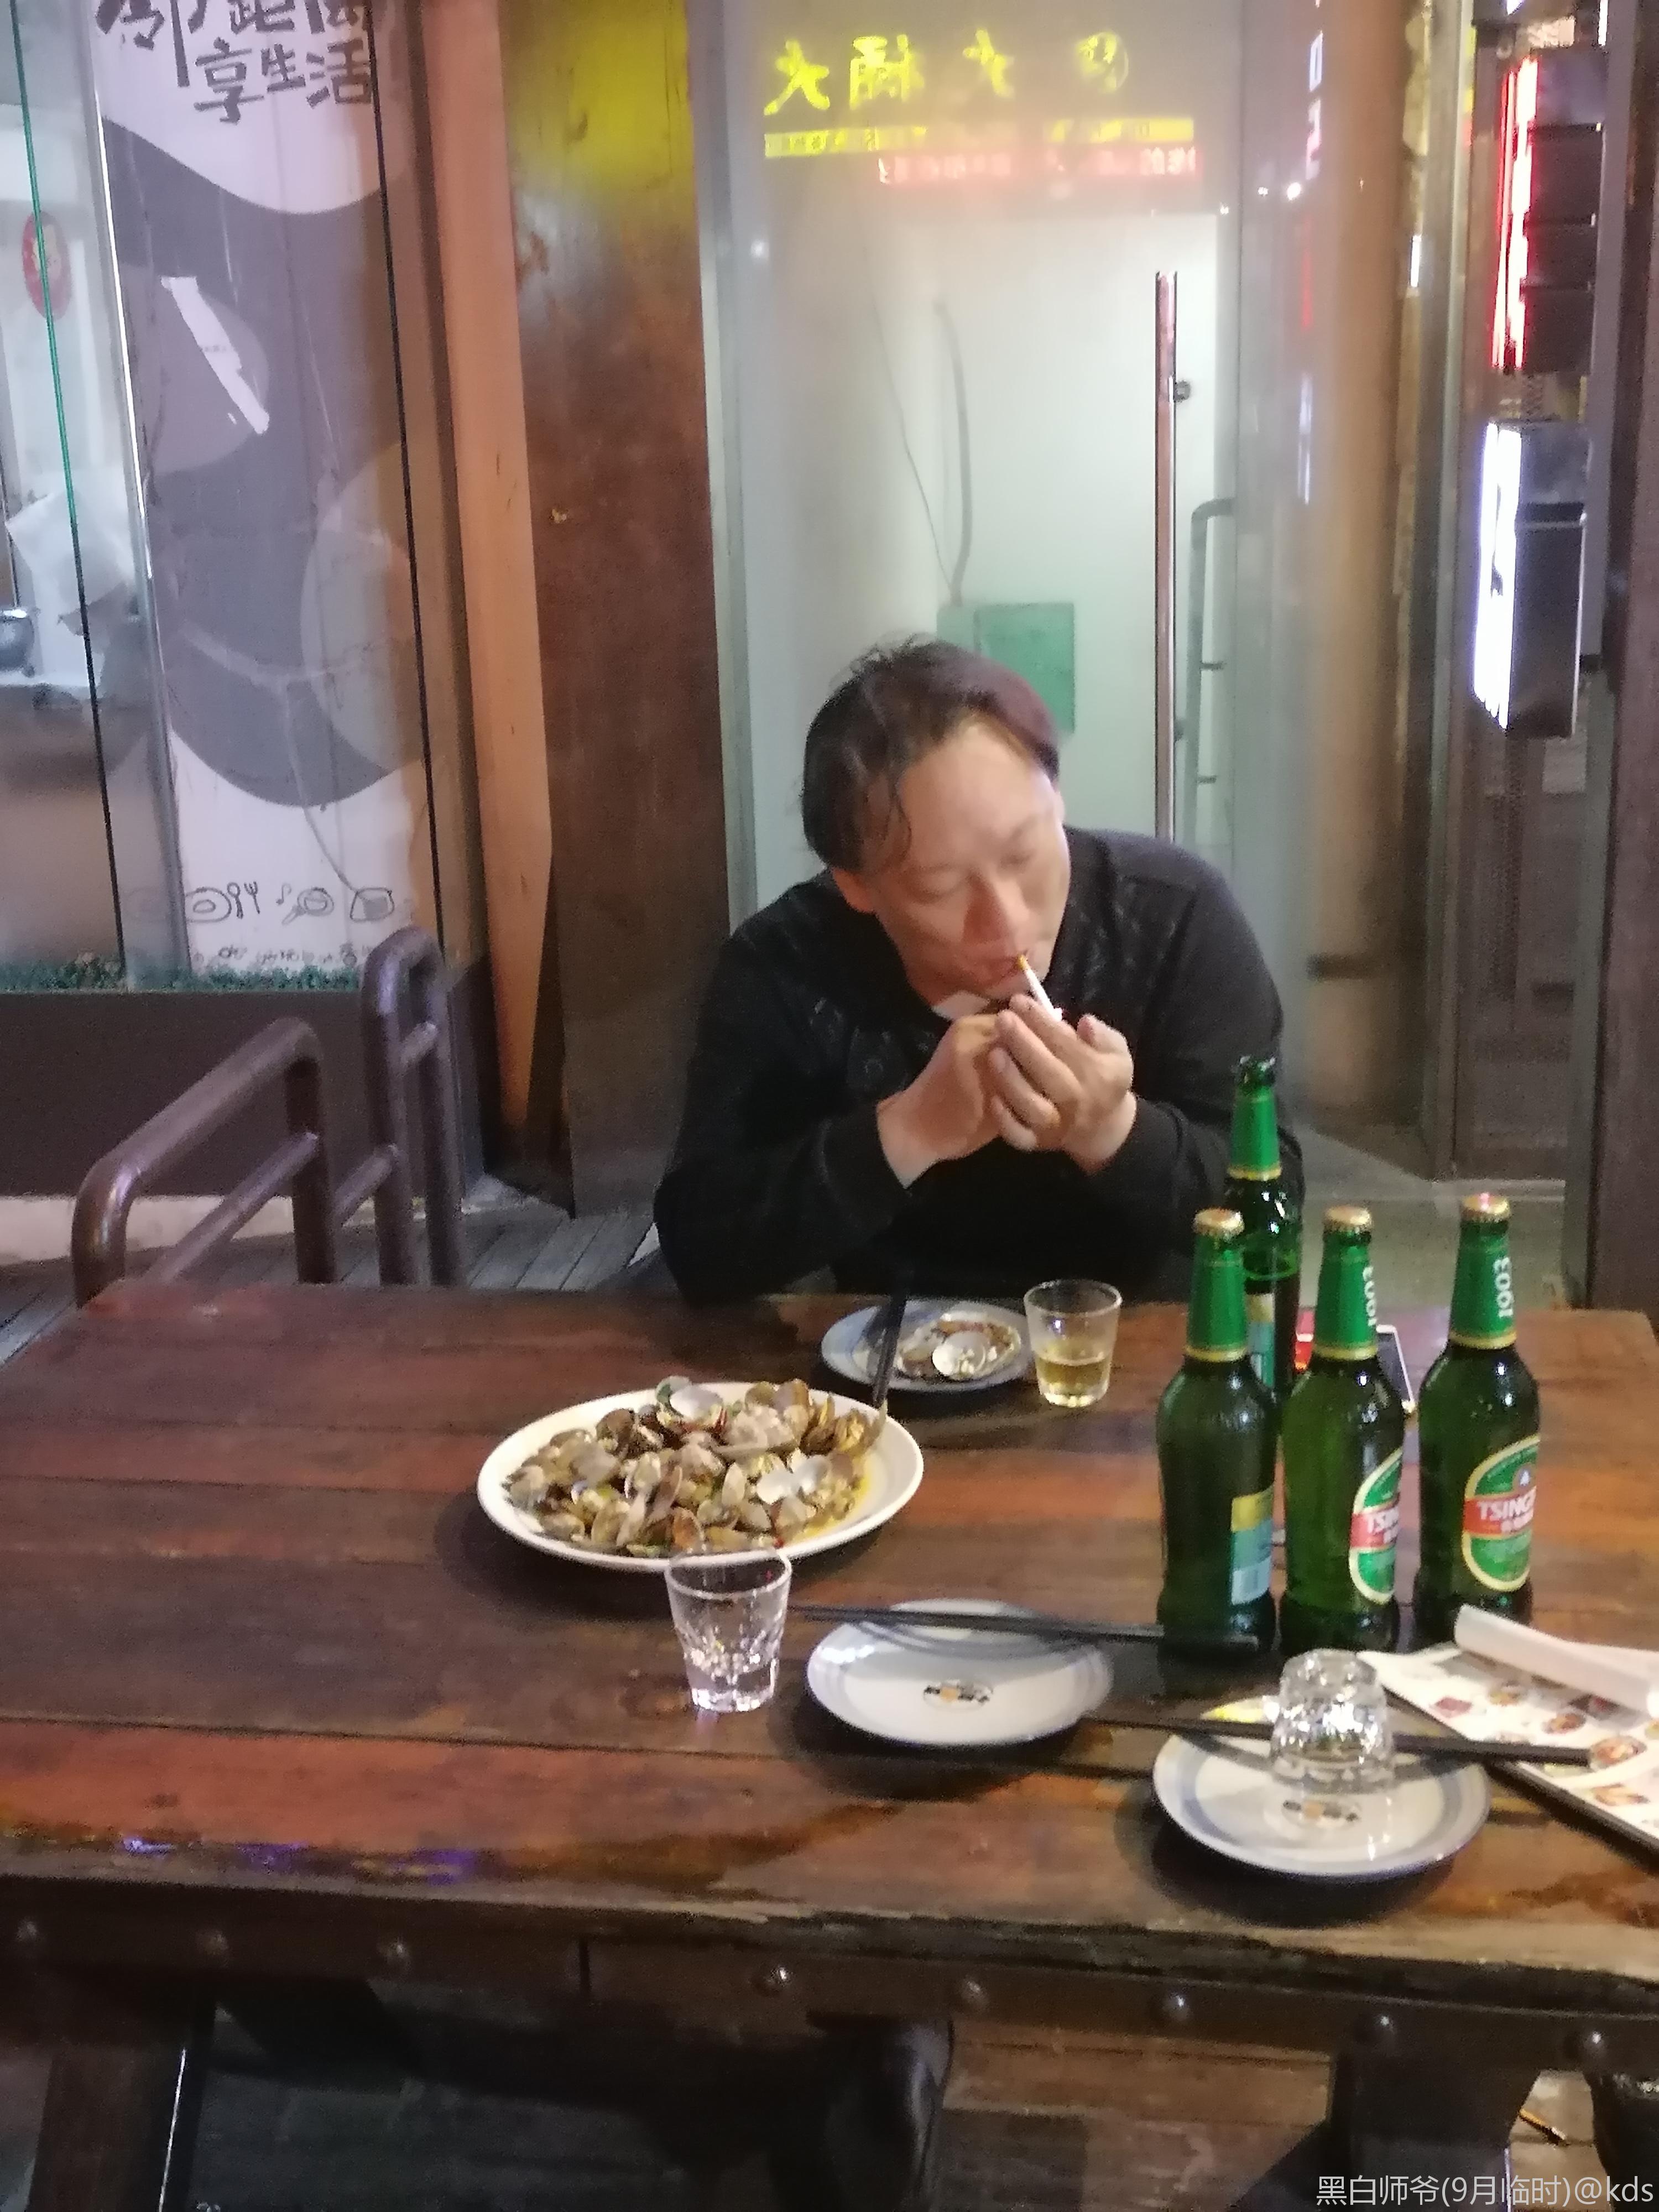 上海腔调男,飞虹路上露天吃饭喝酒抽烟